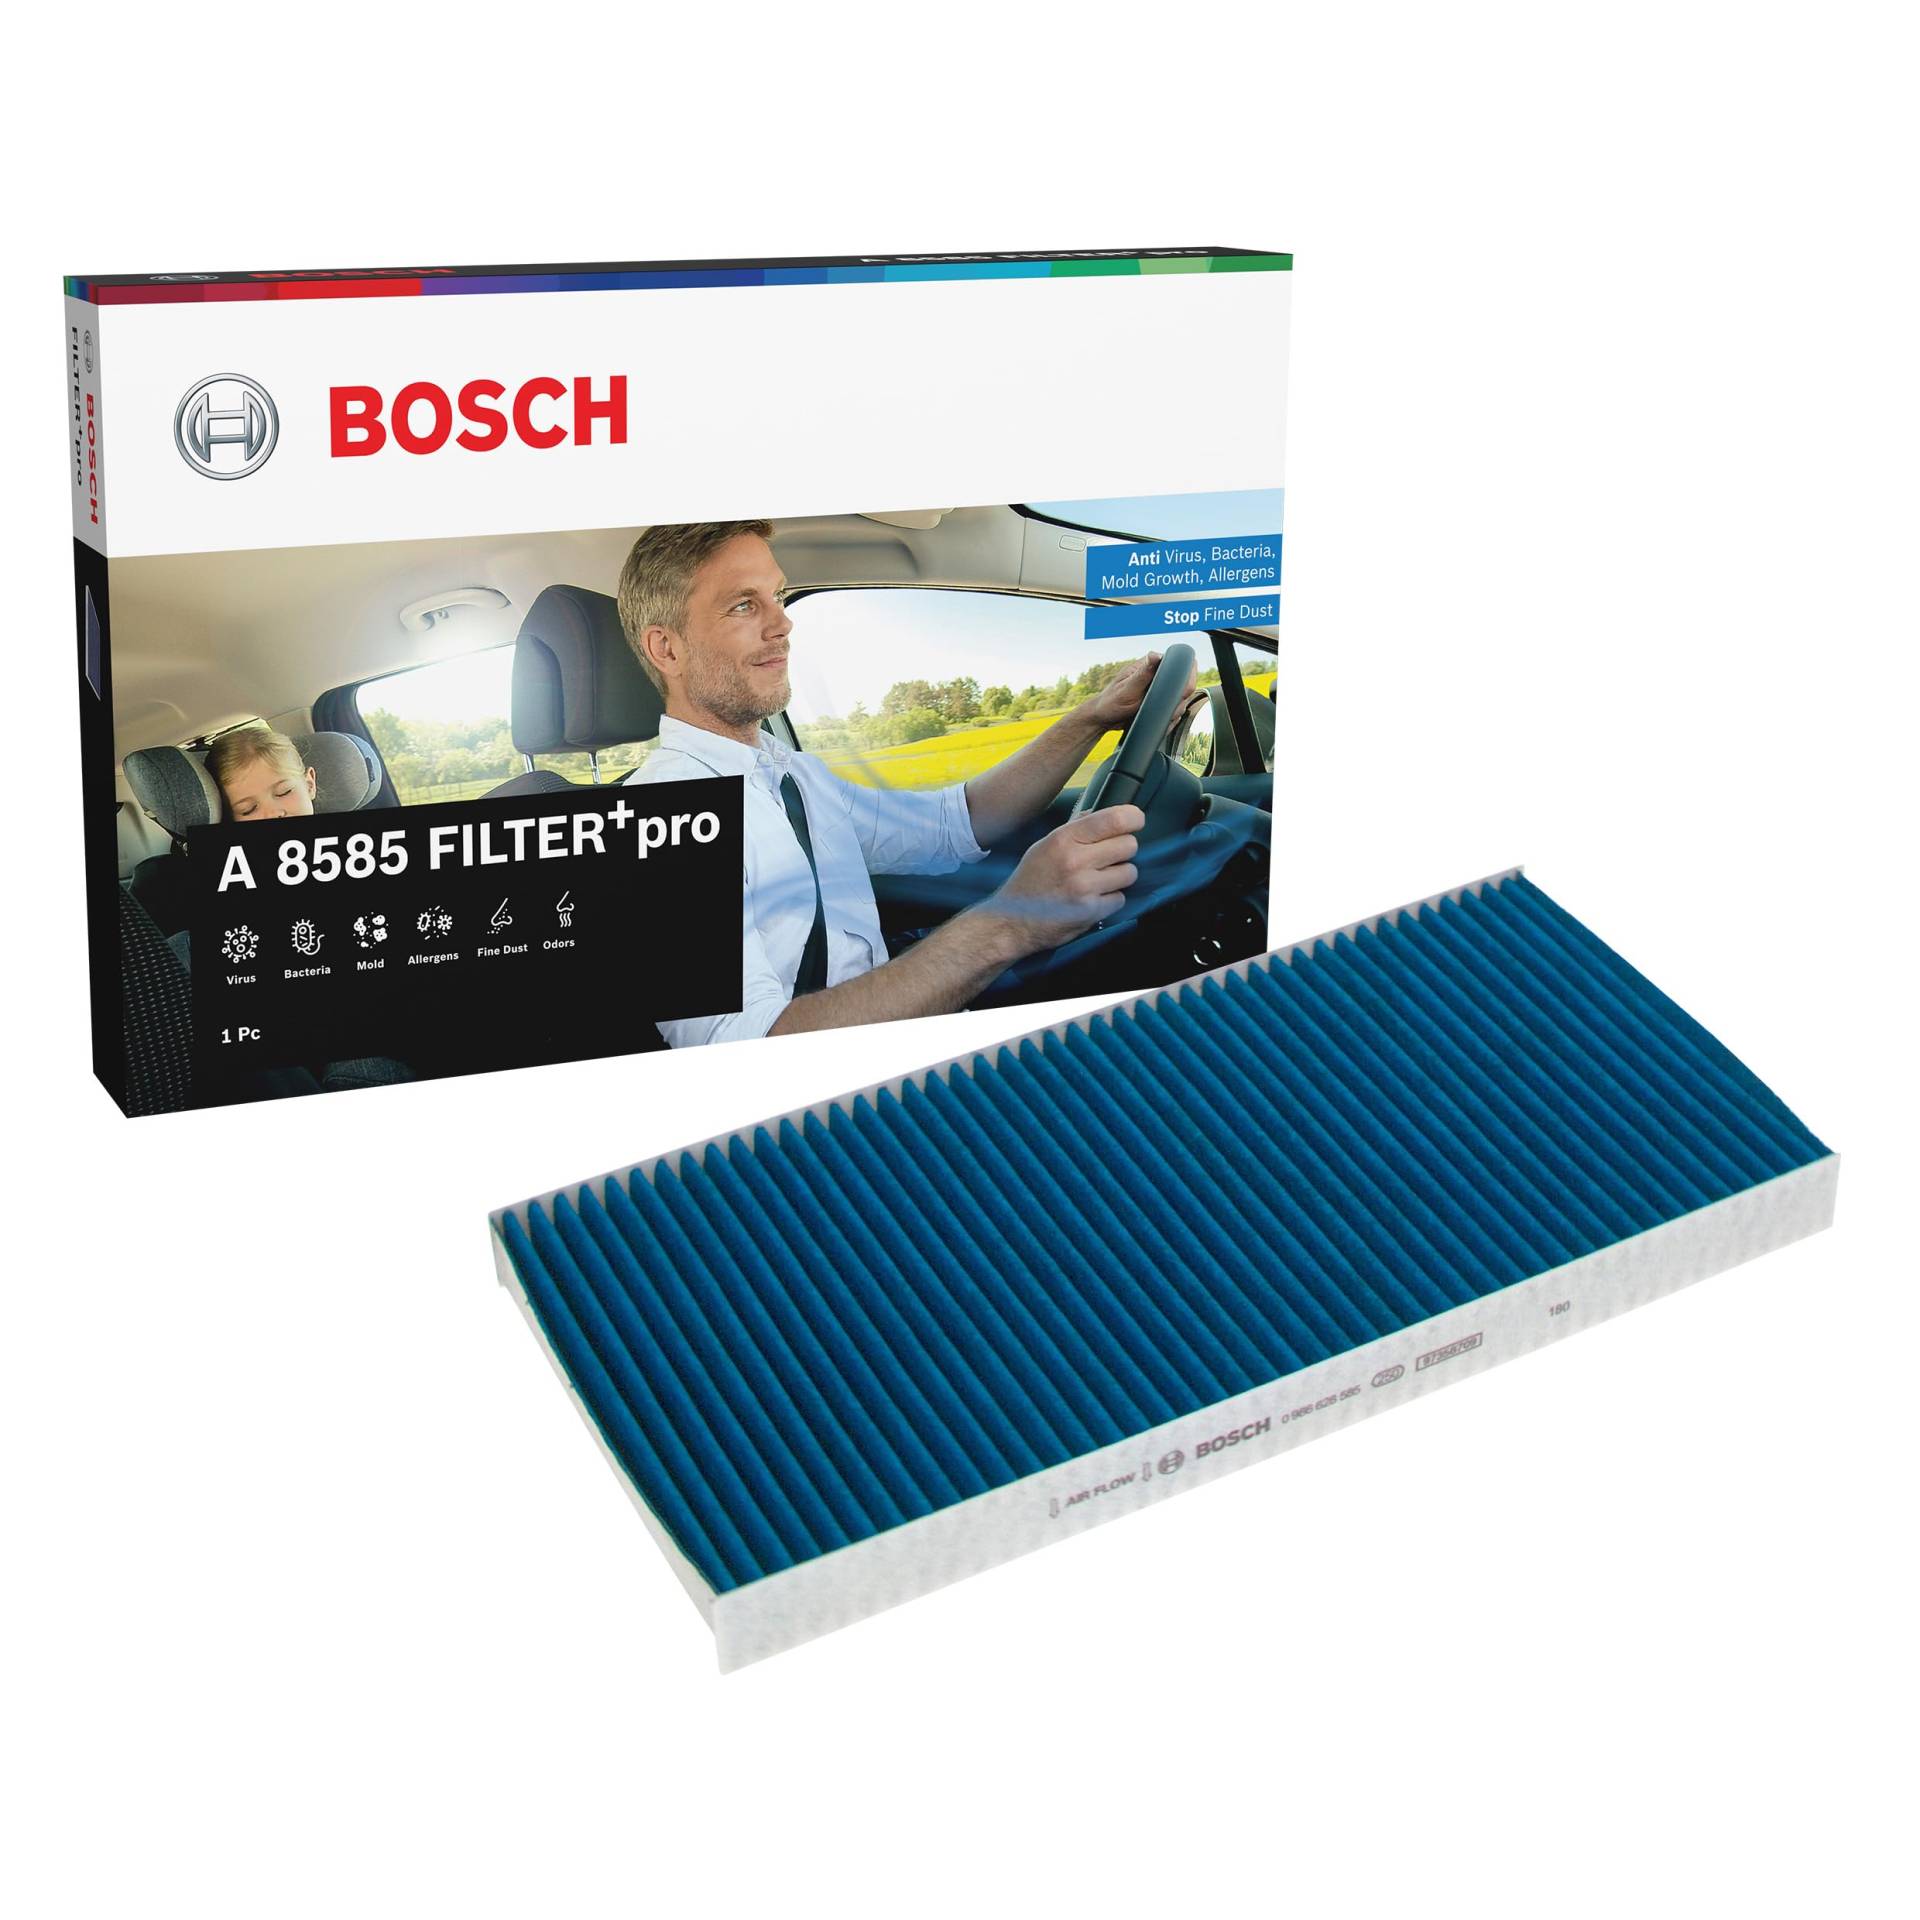 Bosch A8585 - Innenraumfilter FILTER+pro antibakteriell, wirksam gegen übel riechende Gase, Viren, Schimmel, Feinstaub und Allergene von Bosch Automotive